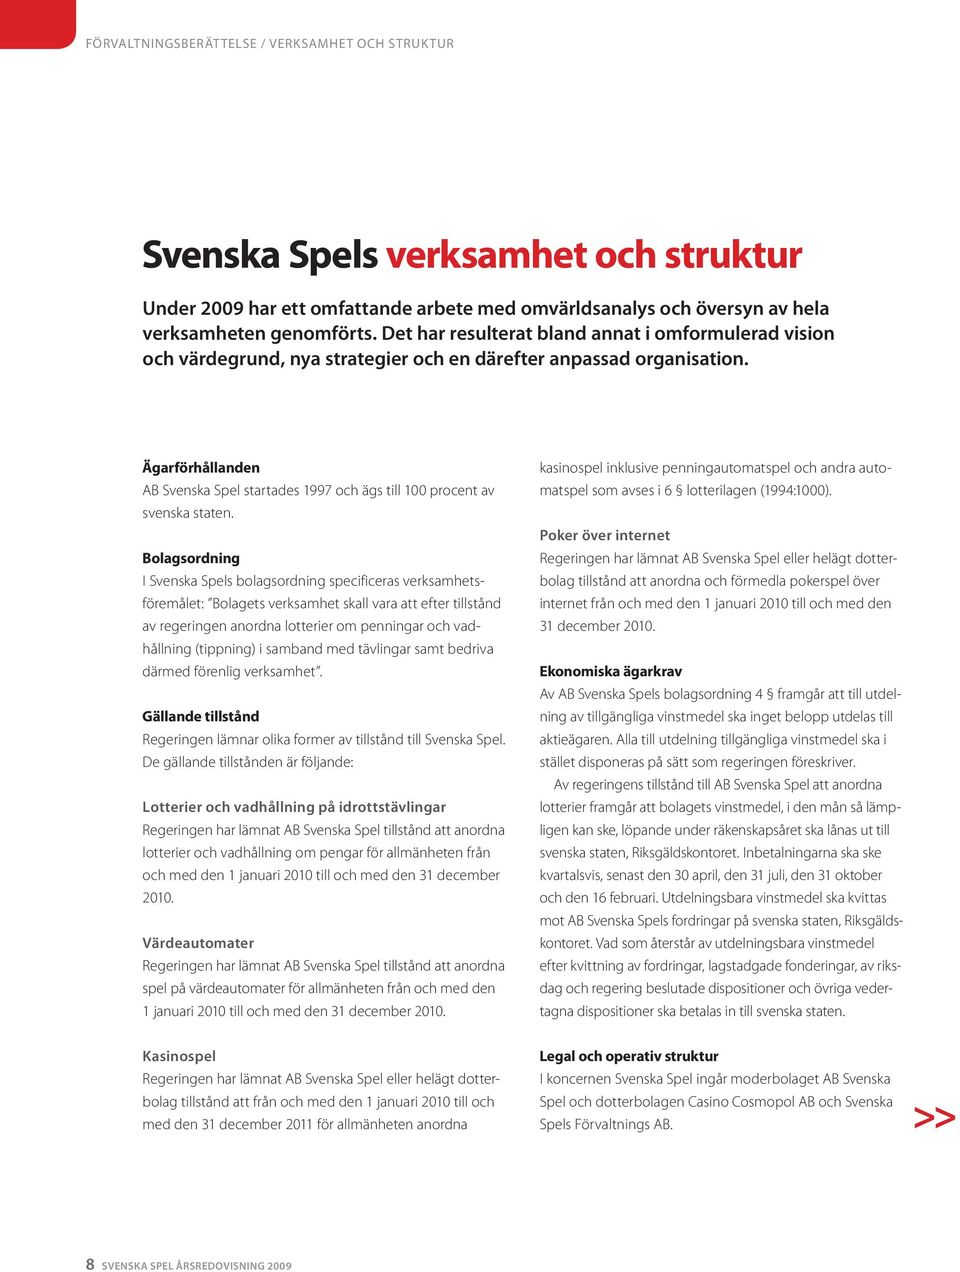 Ägarförhållanden AB Svenska Spel startades 1997 och ägs till 100 procent av svenska staten.